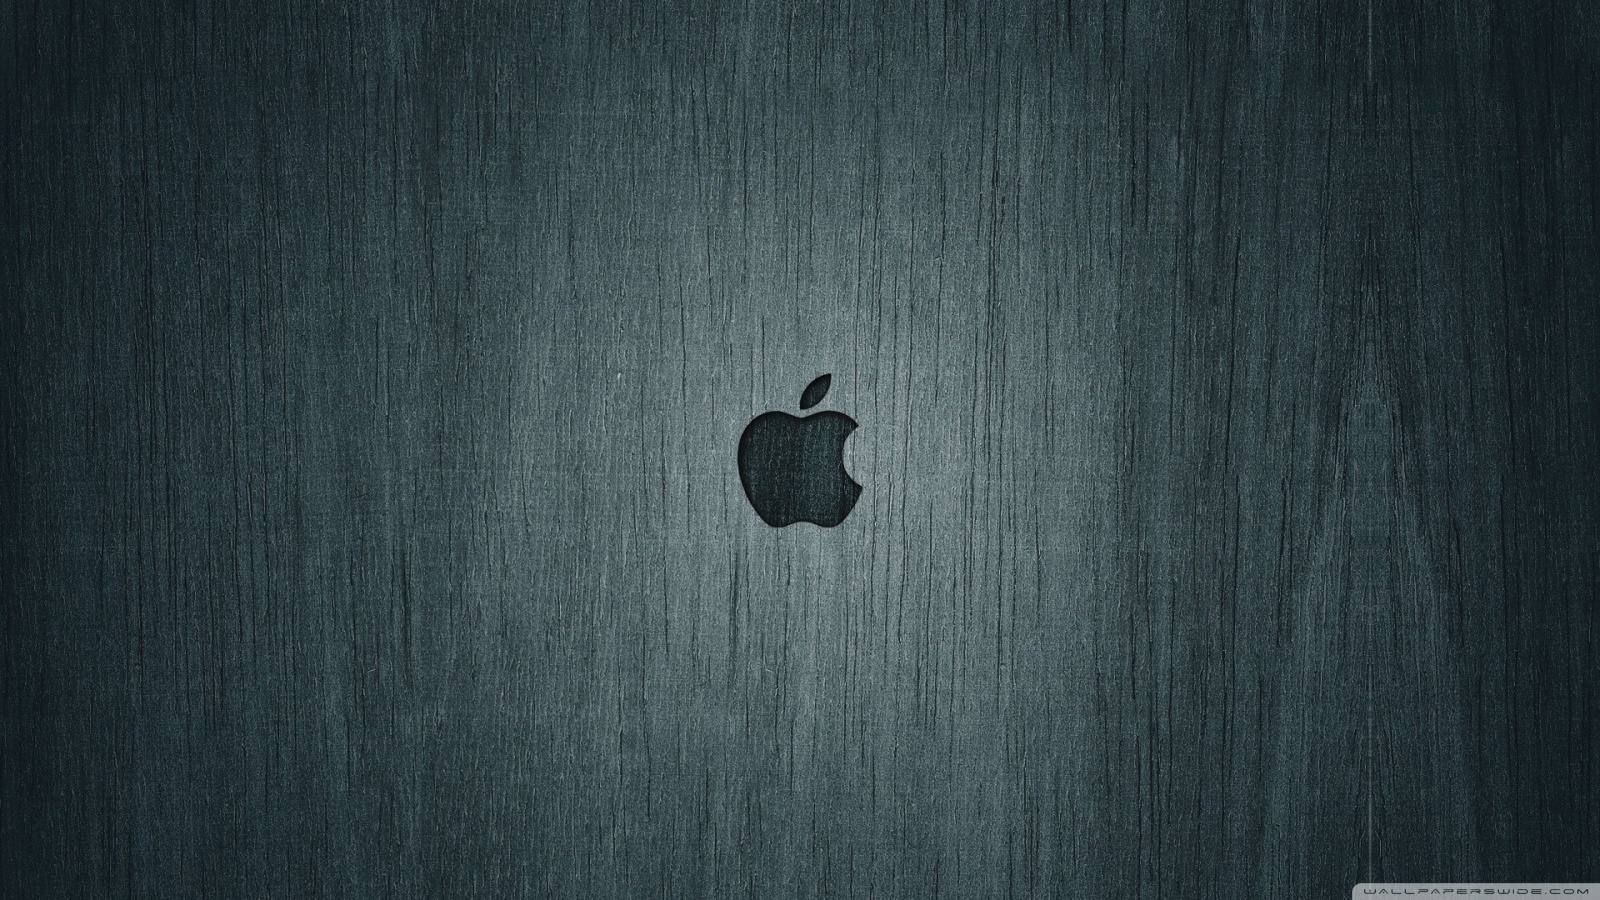 Hd apple wallpaper